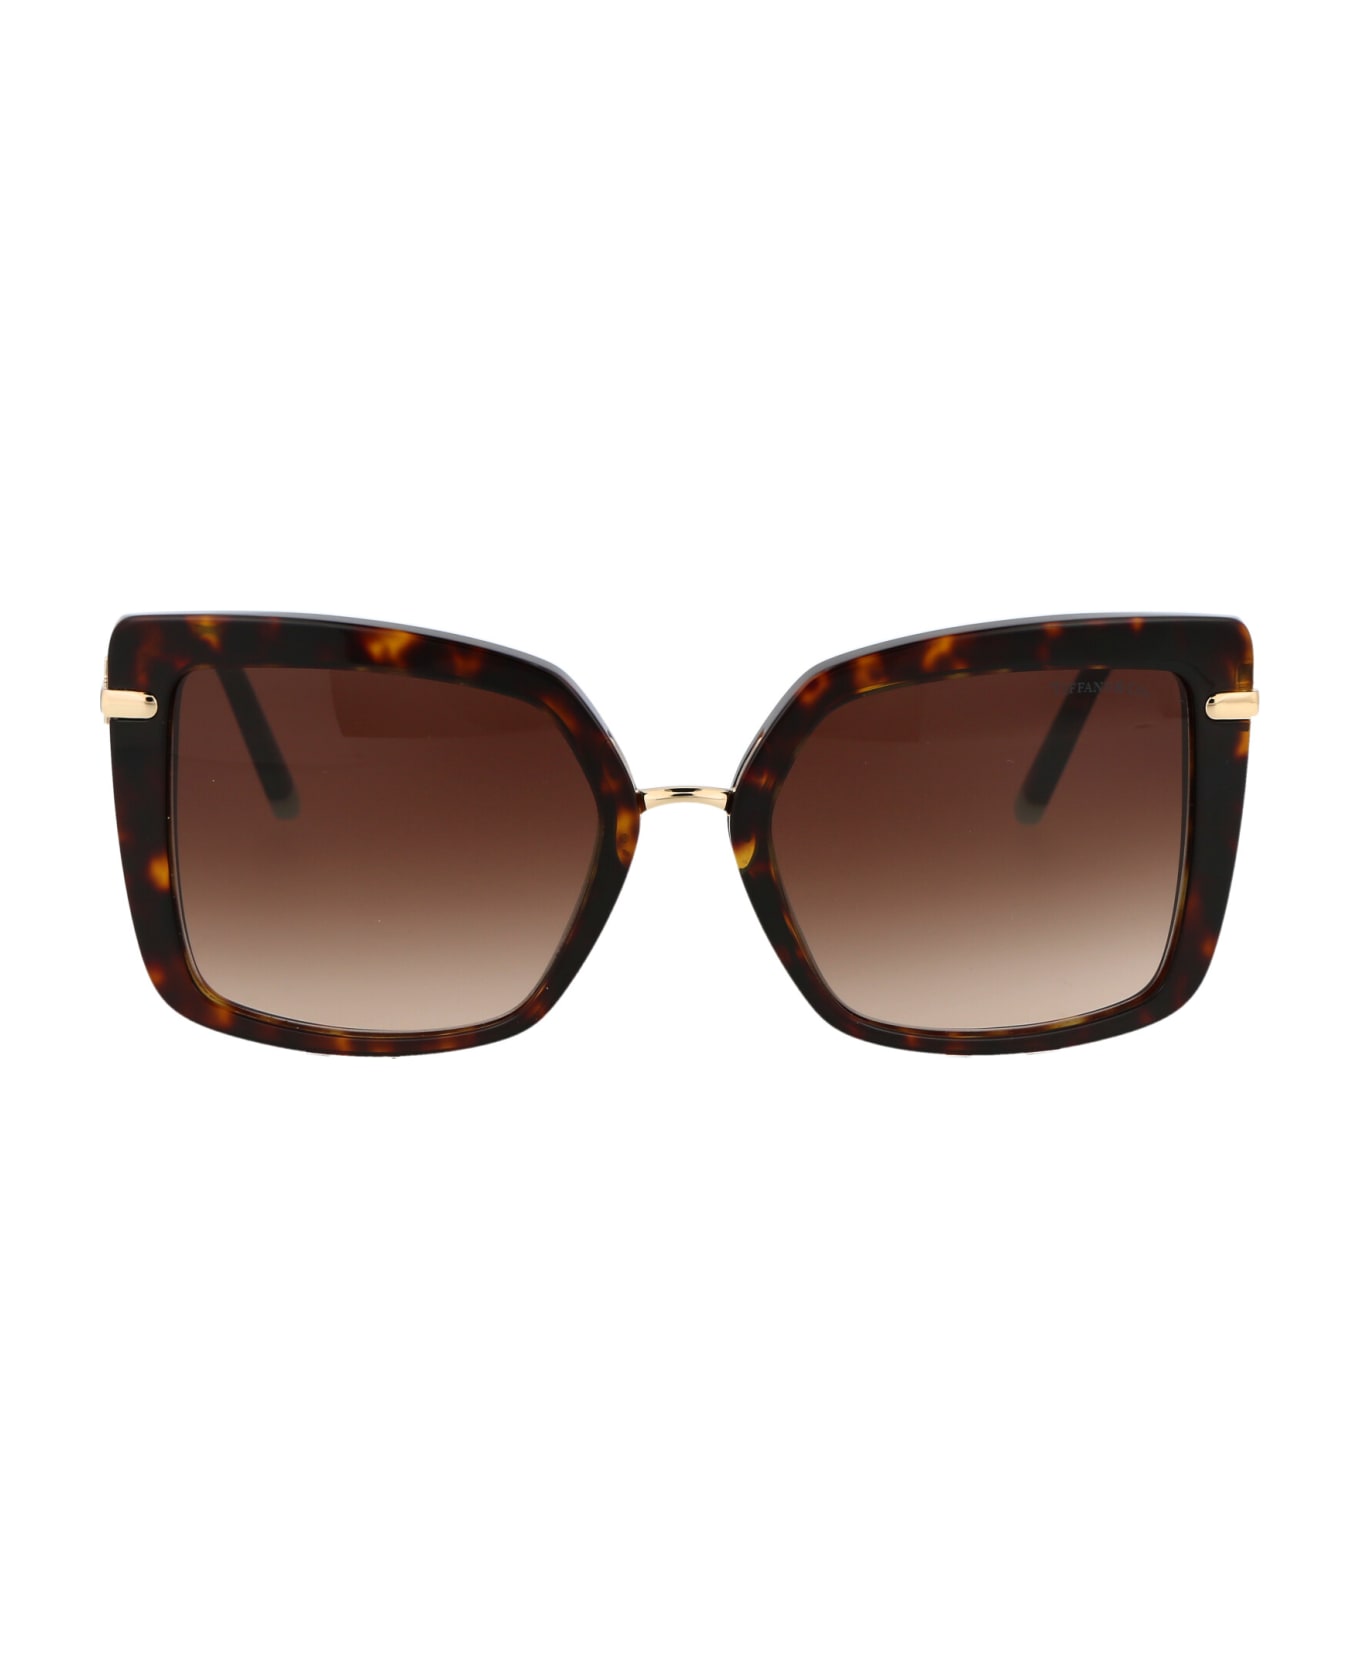 Tiffany & Co. 0tf4185 Sunglasses - 80153B Havana